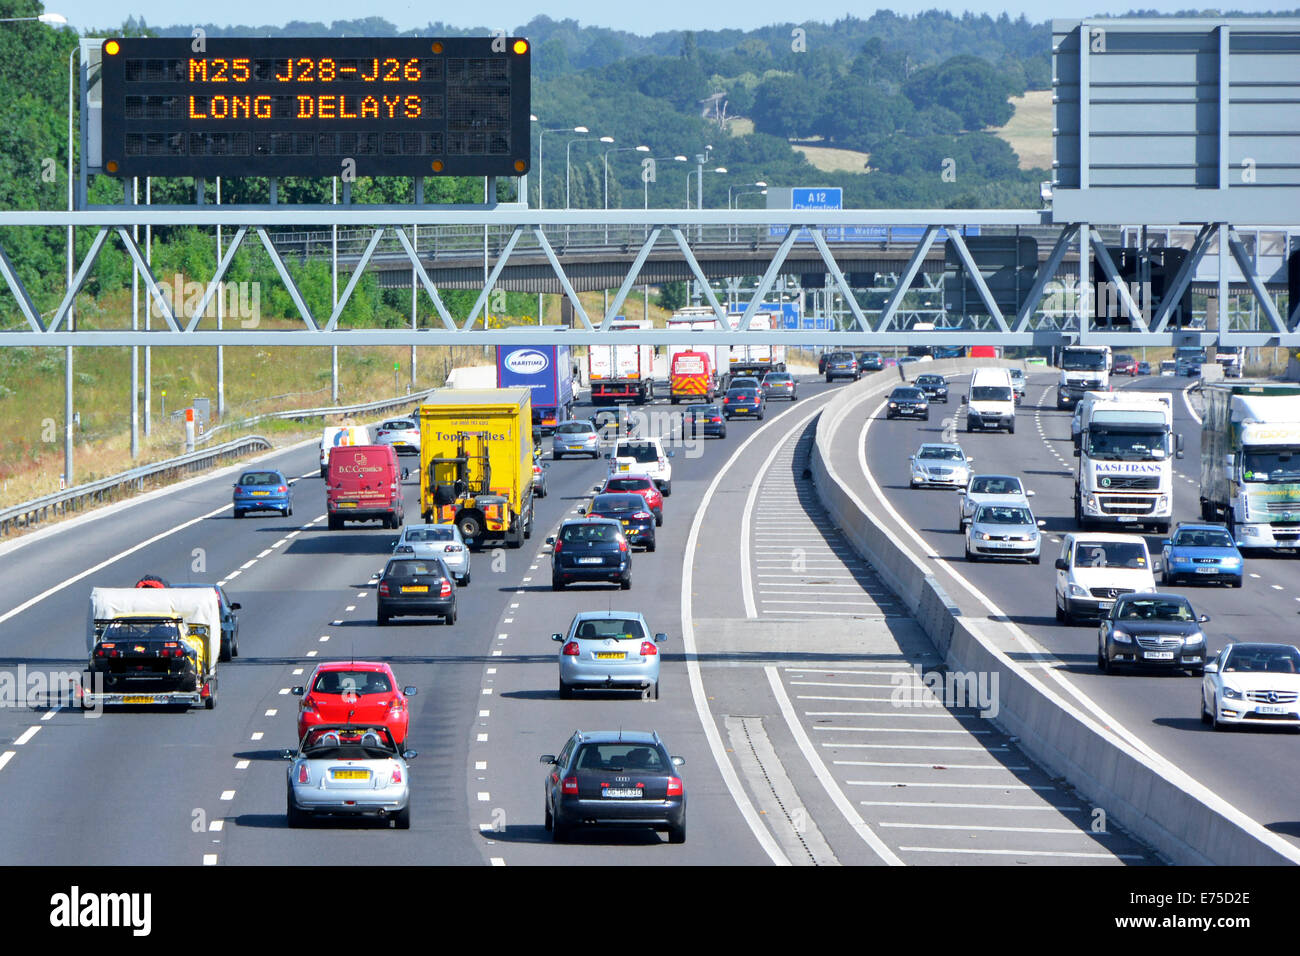 Autobahnverkehr & digitale elektronische Technologie Straßenschild mit Vorwarnung lange Verzögerungen im Uhrzeigersinn M25 Route nächste Kreuzung 28 Brentwood UK Stockfoto